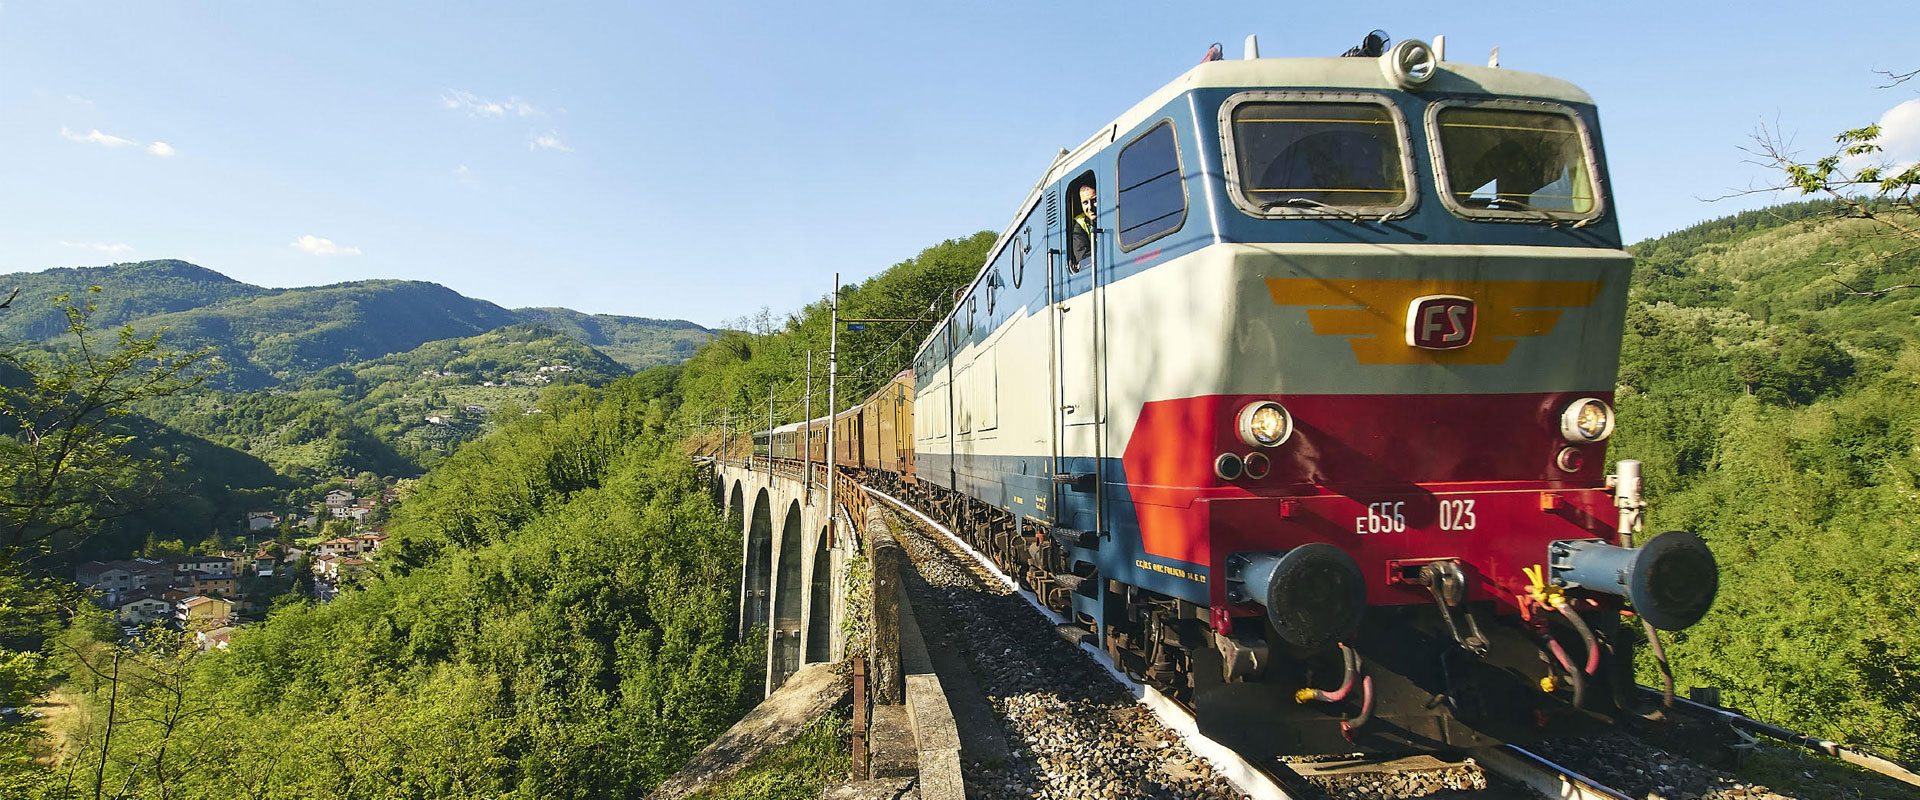 Al via Porrettana Express, otto treni storici da giugno a ottobre sui binari che hanno fatto la storia d’Italia